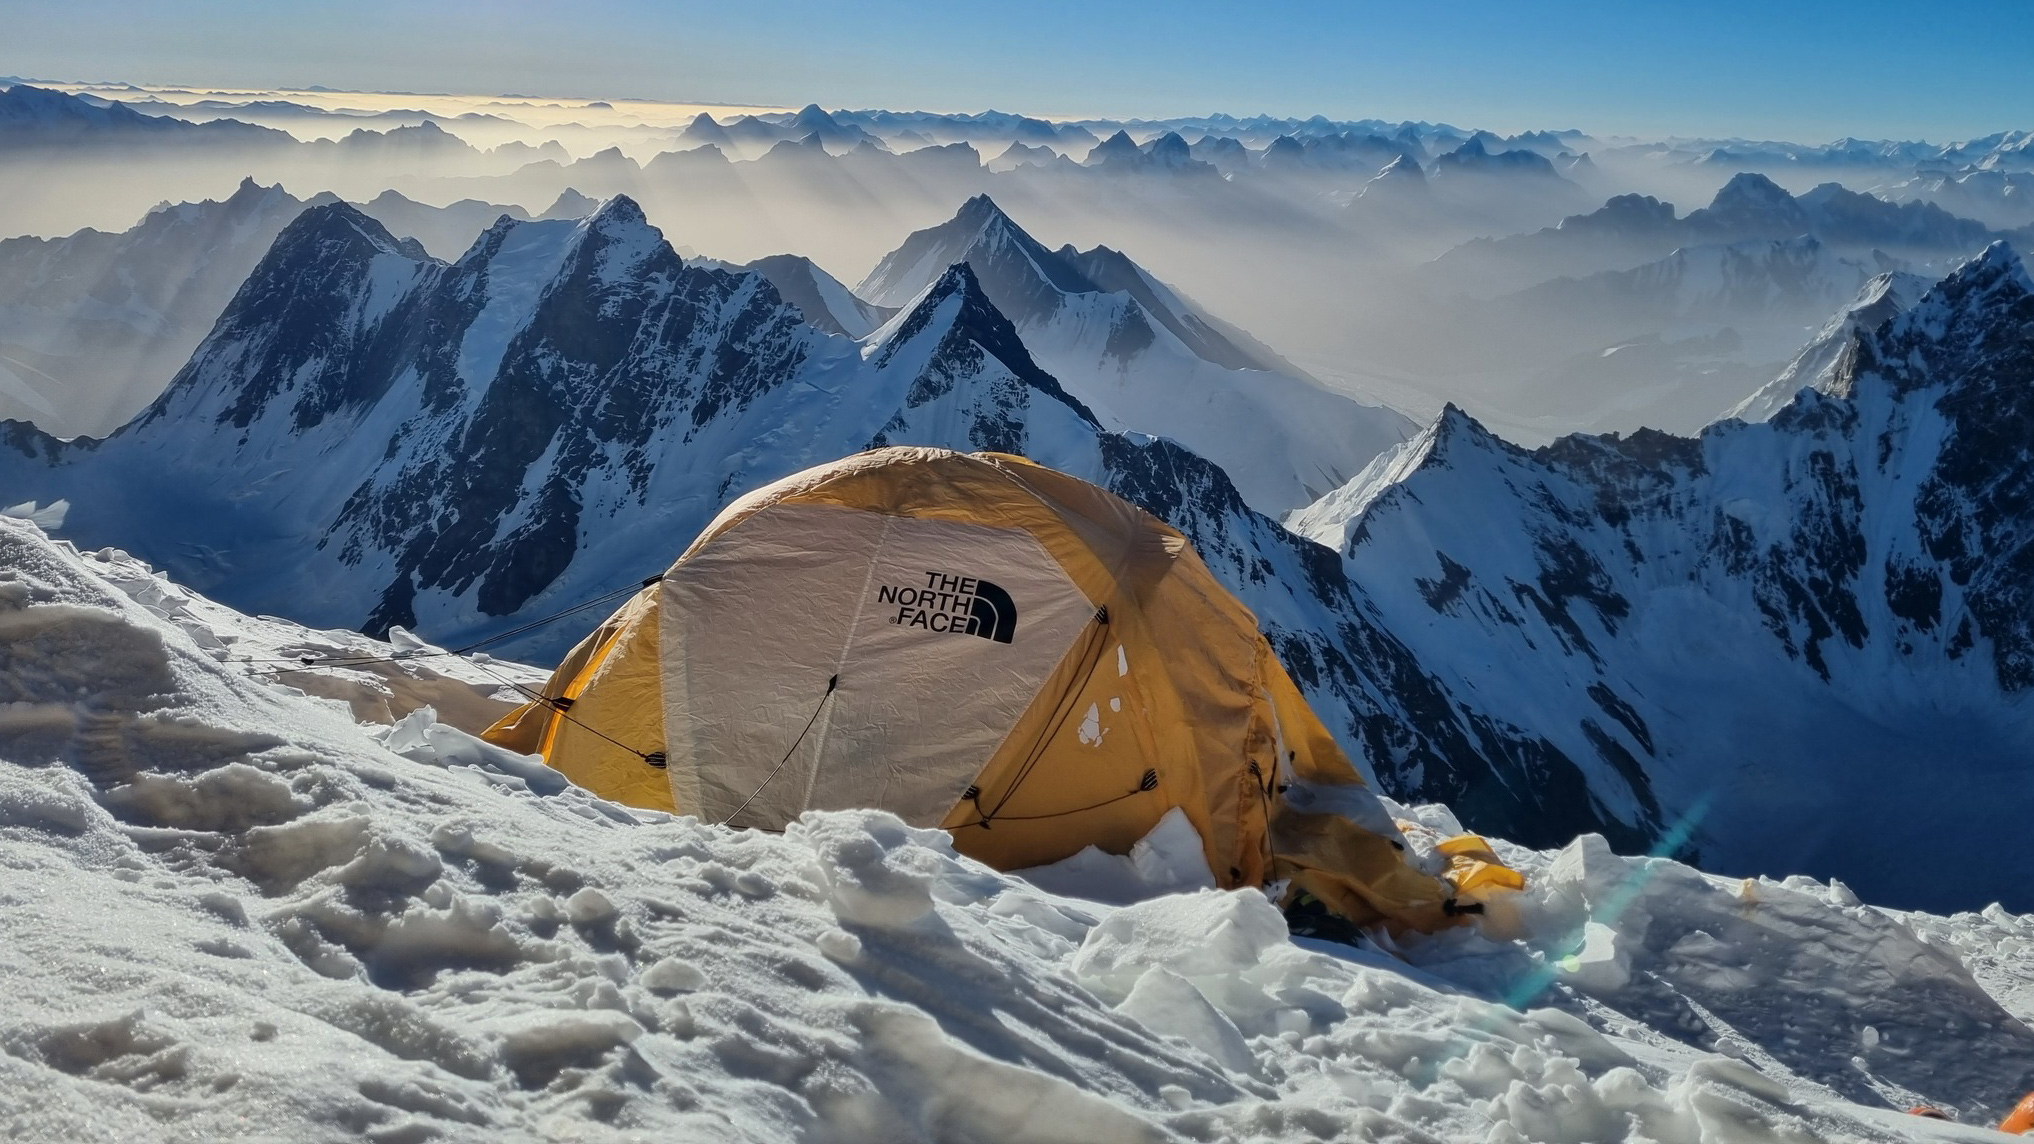 Slajdy podróżnicze: K2 - szczyt marzeń - Monika Witkowska